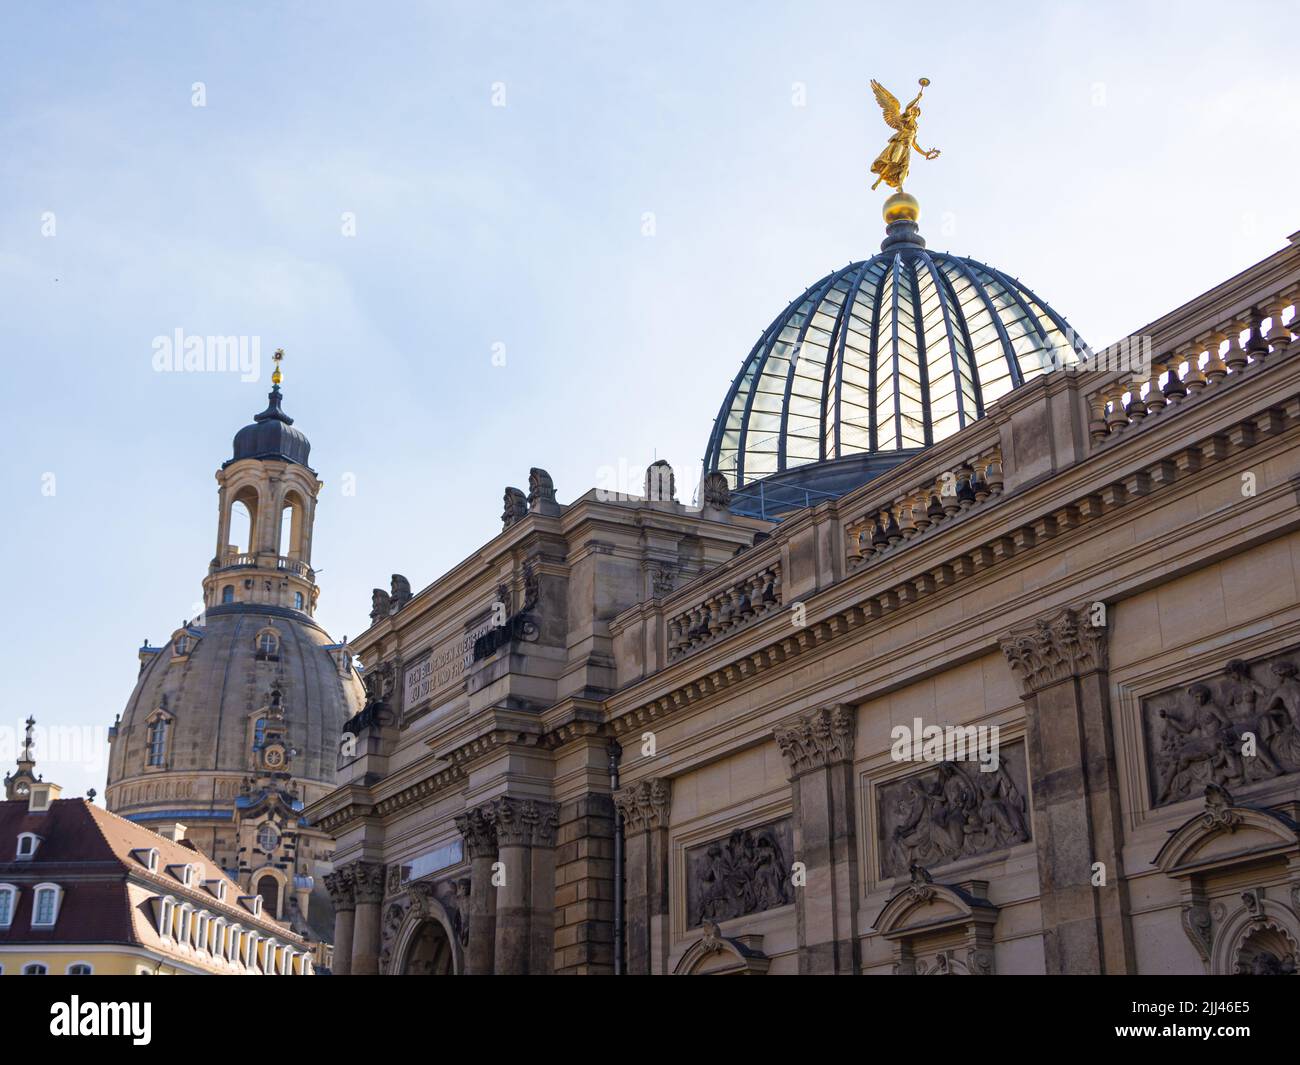 Dresde, Alemania - 28 de junio de 2022: En la Academia de las Artes en las terrazas del río Elba. Estatua dorada en la cúpula de cristal del edificio histórico. Landm Foto de stock